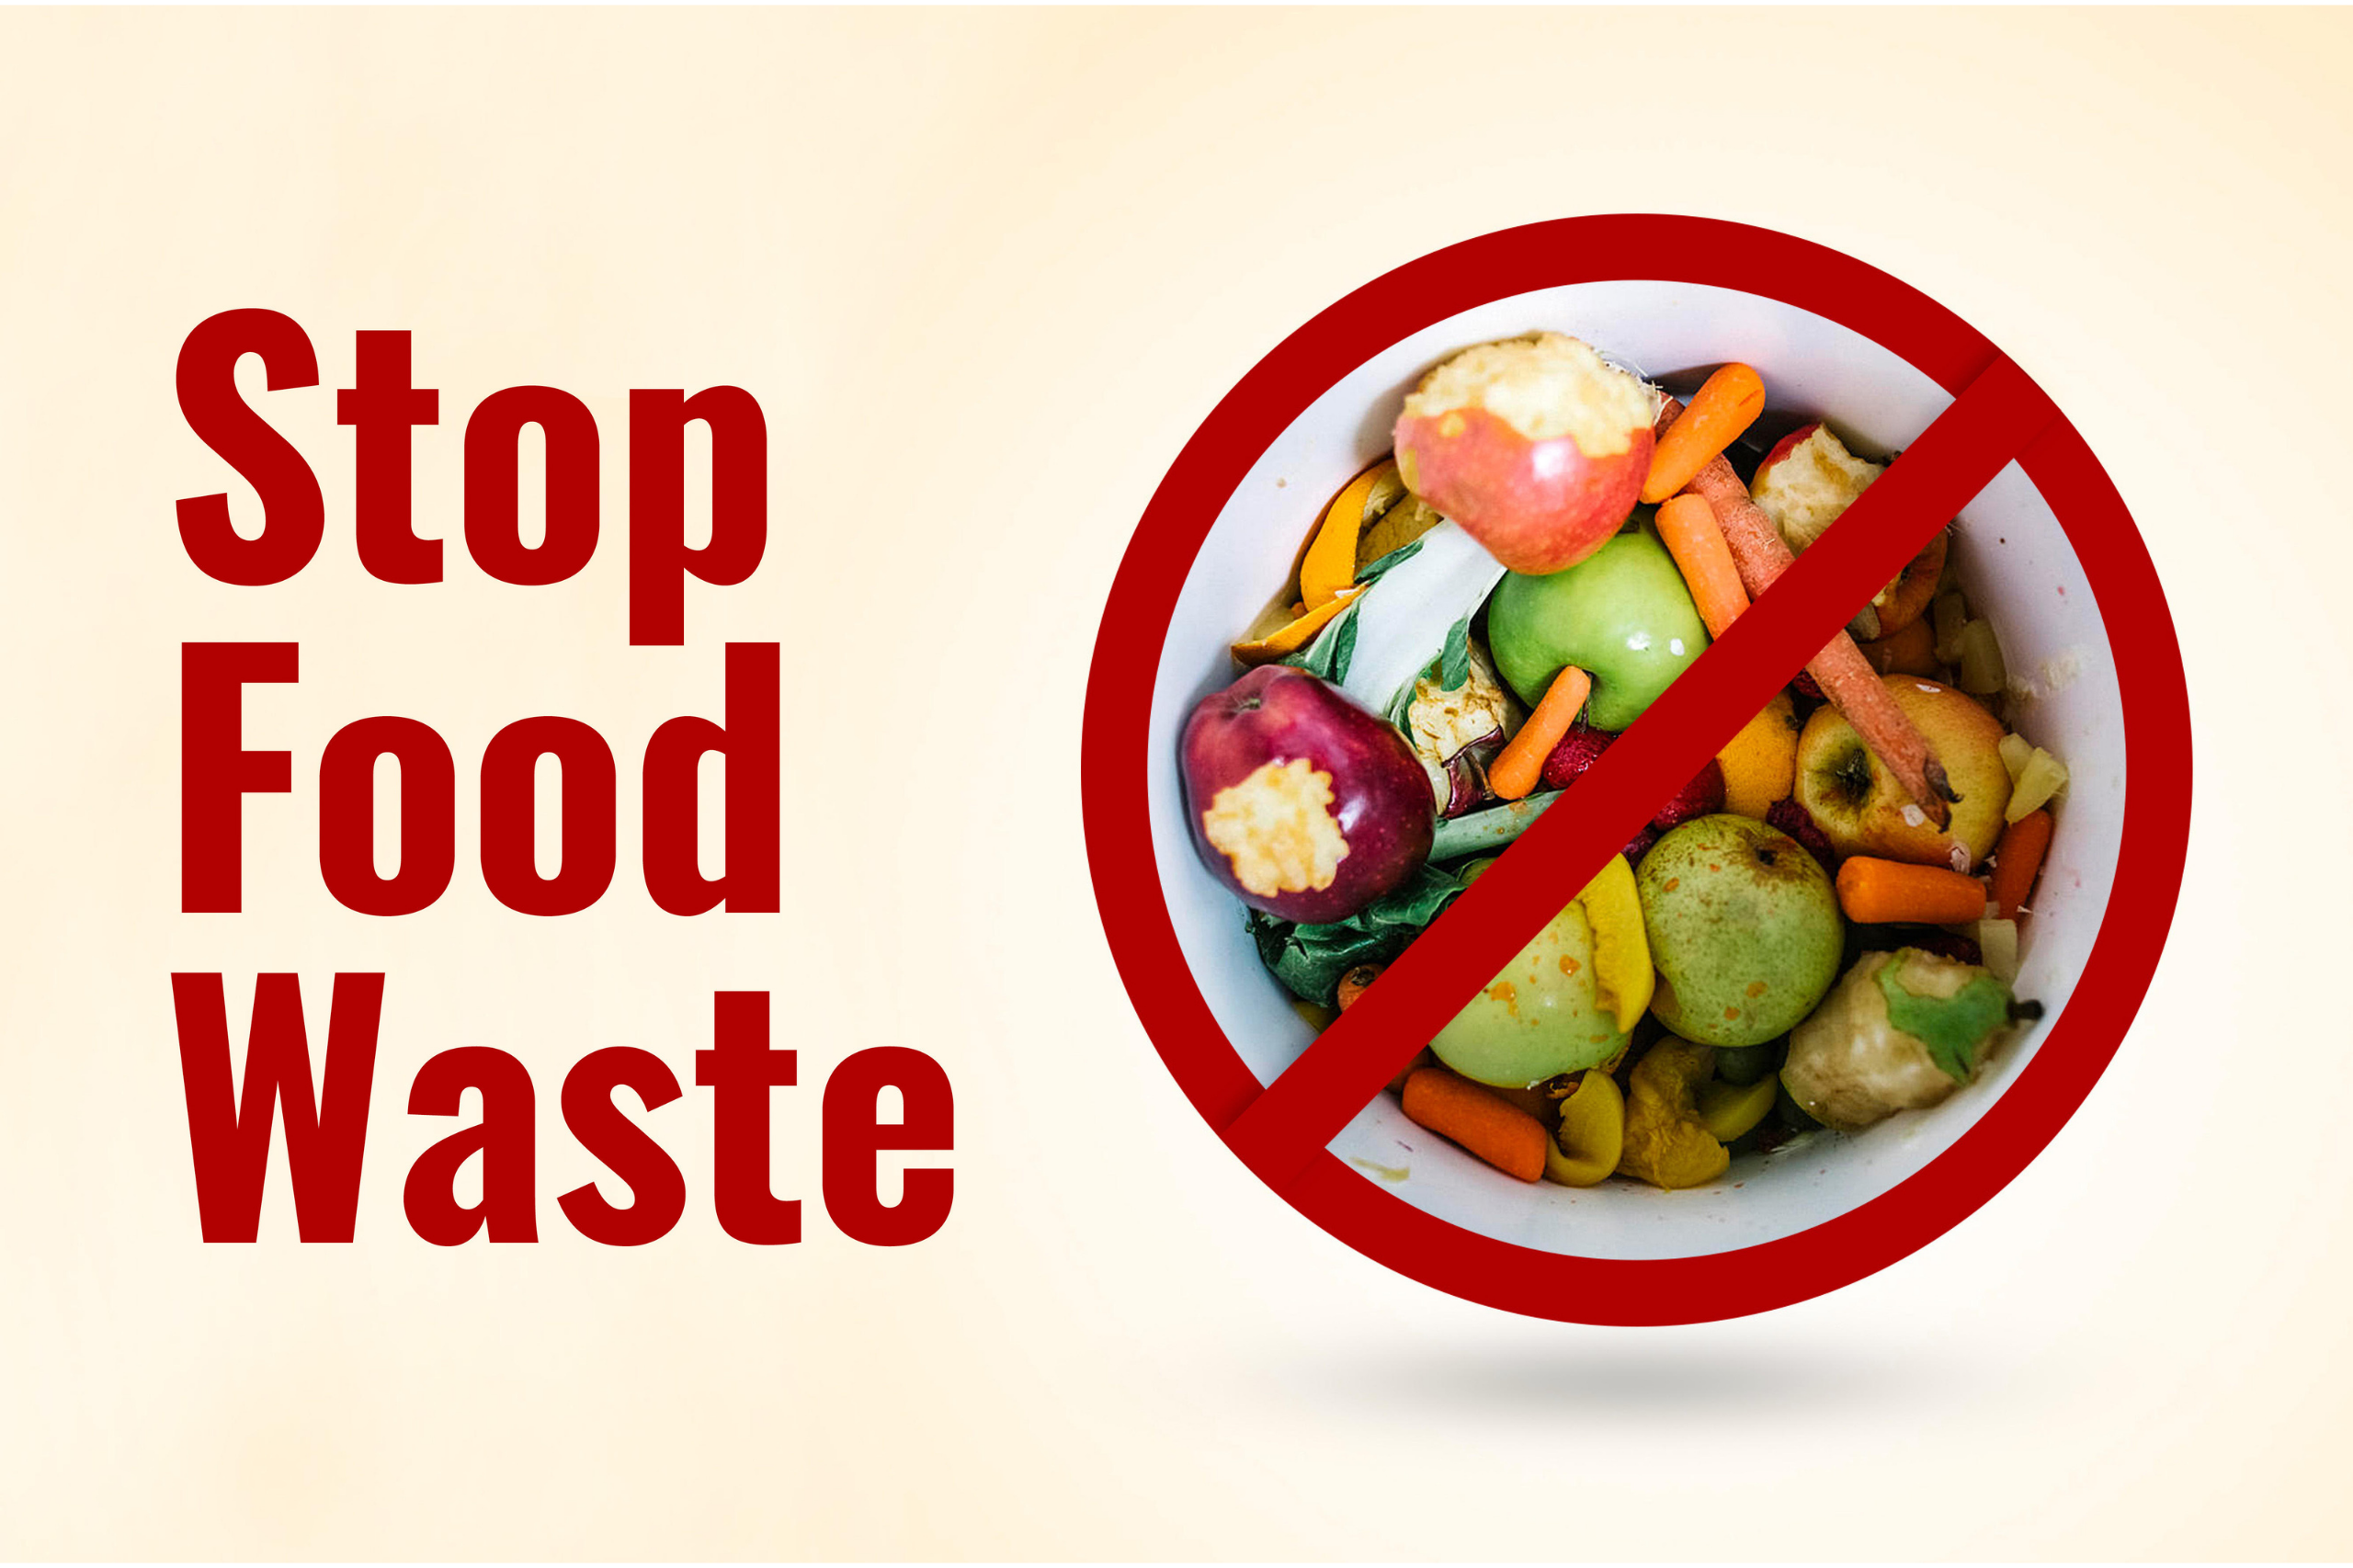 STOP FOOD WASTE